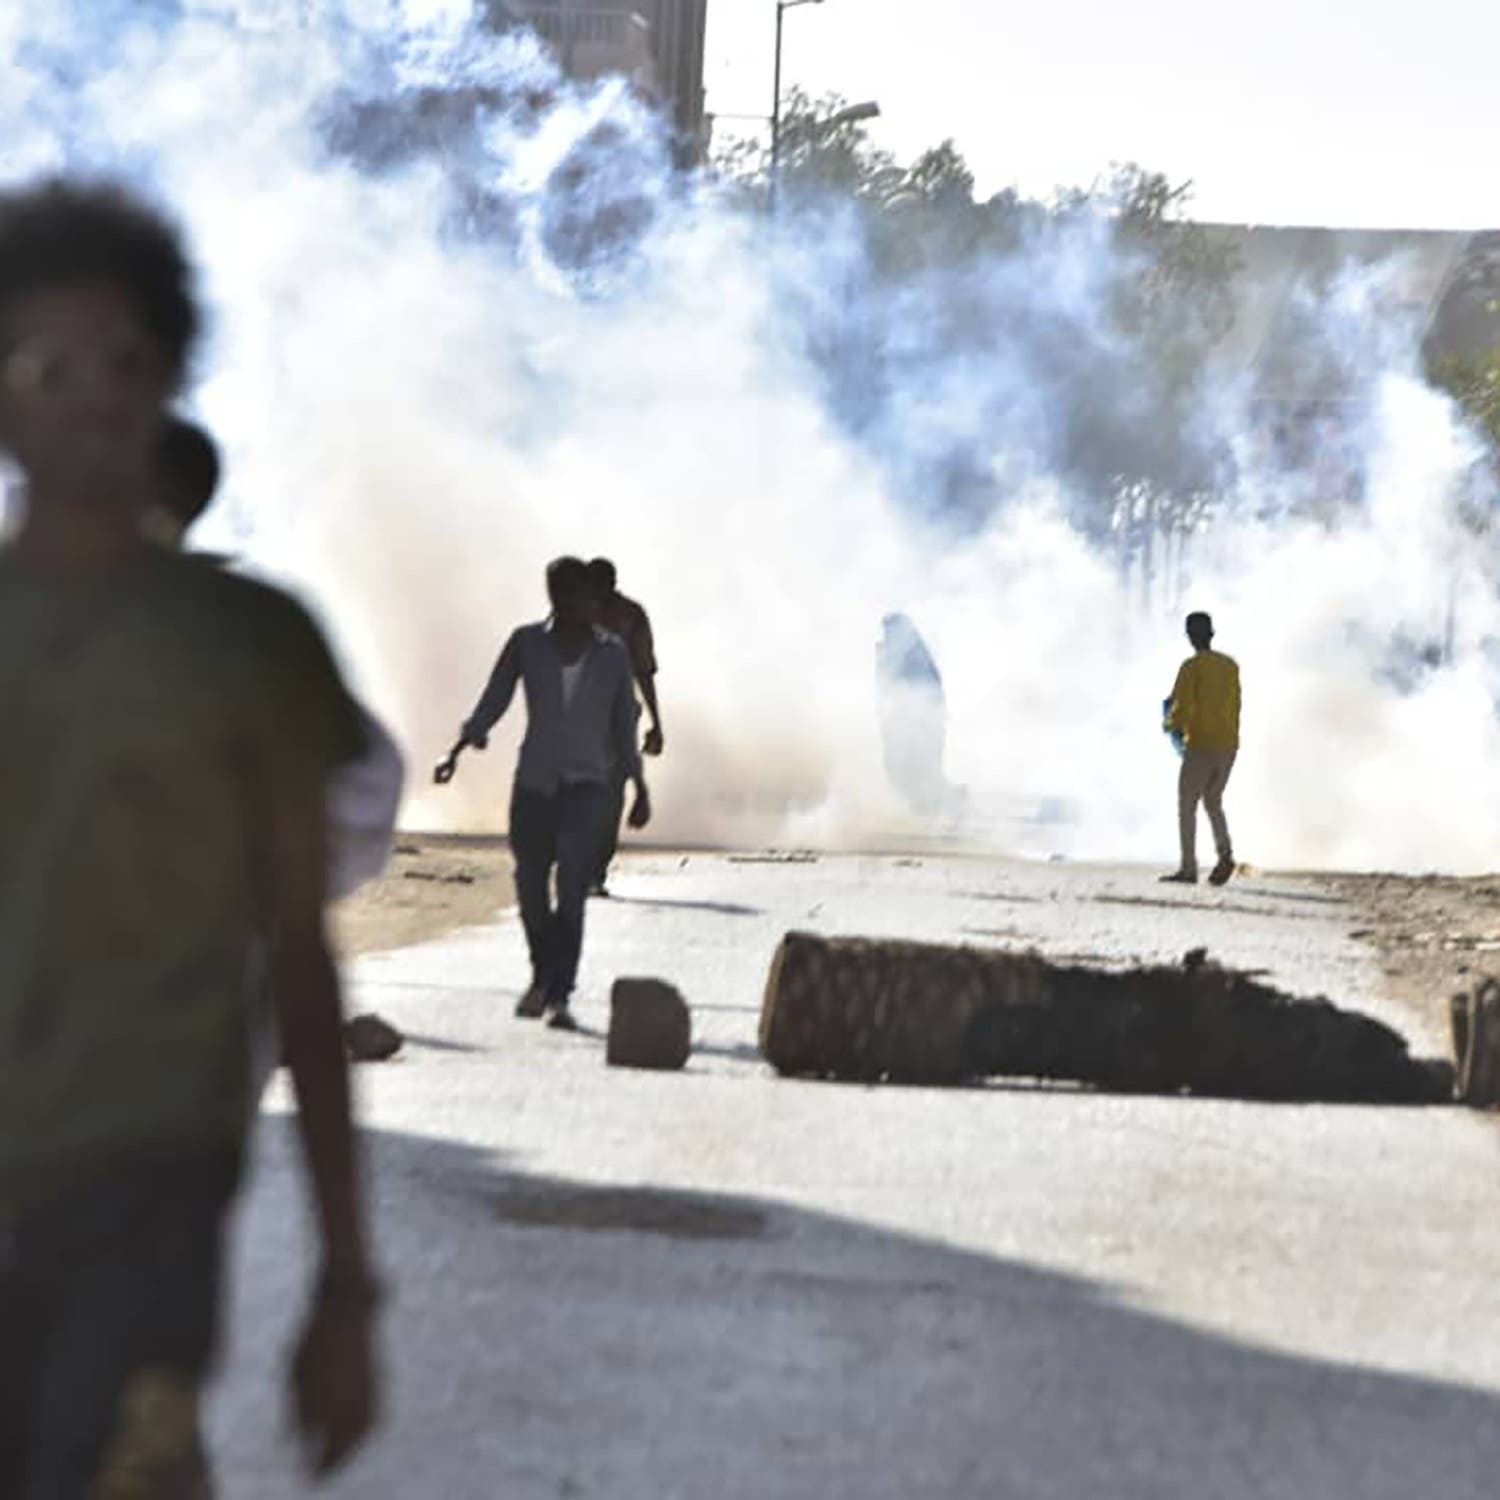 شرطة السودان: تظاهرات اليوم كانت سلمية لكنها انحرفت عن مسارها